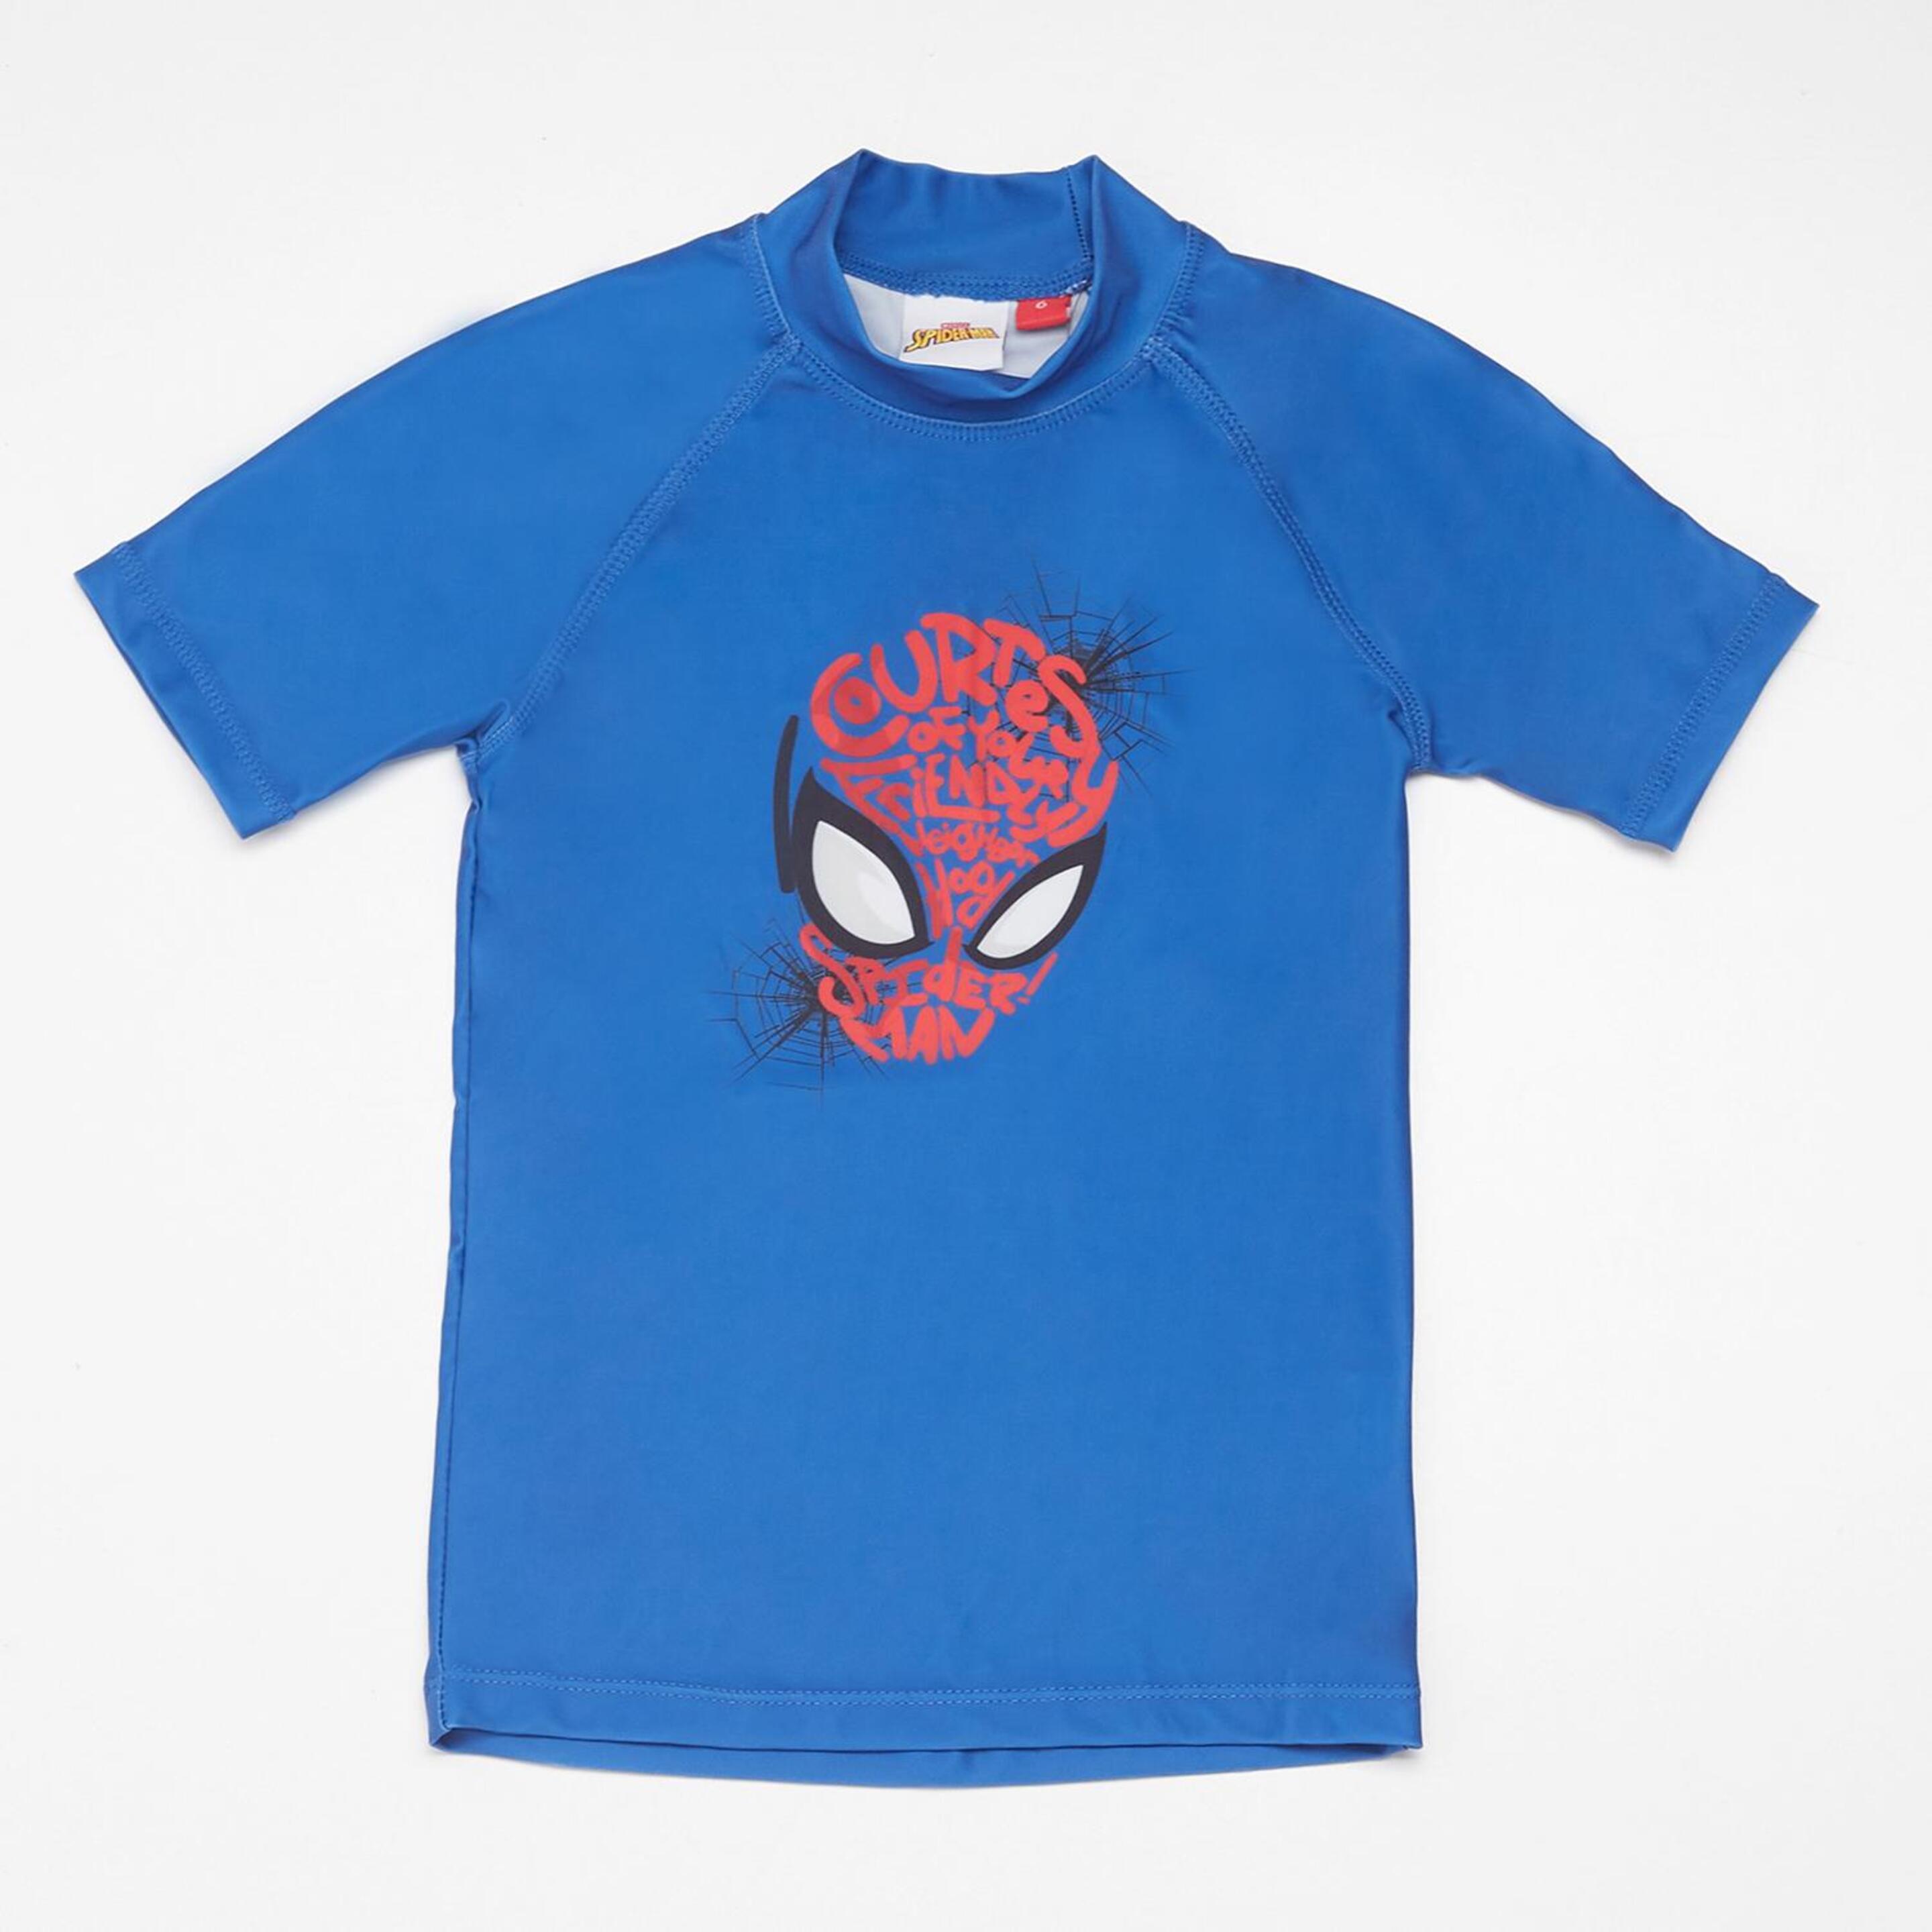 T-shirt Spider-man